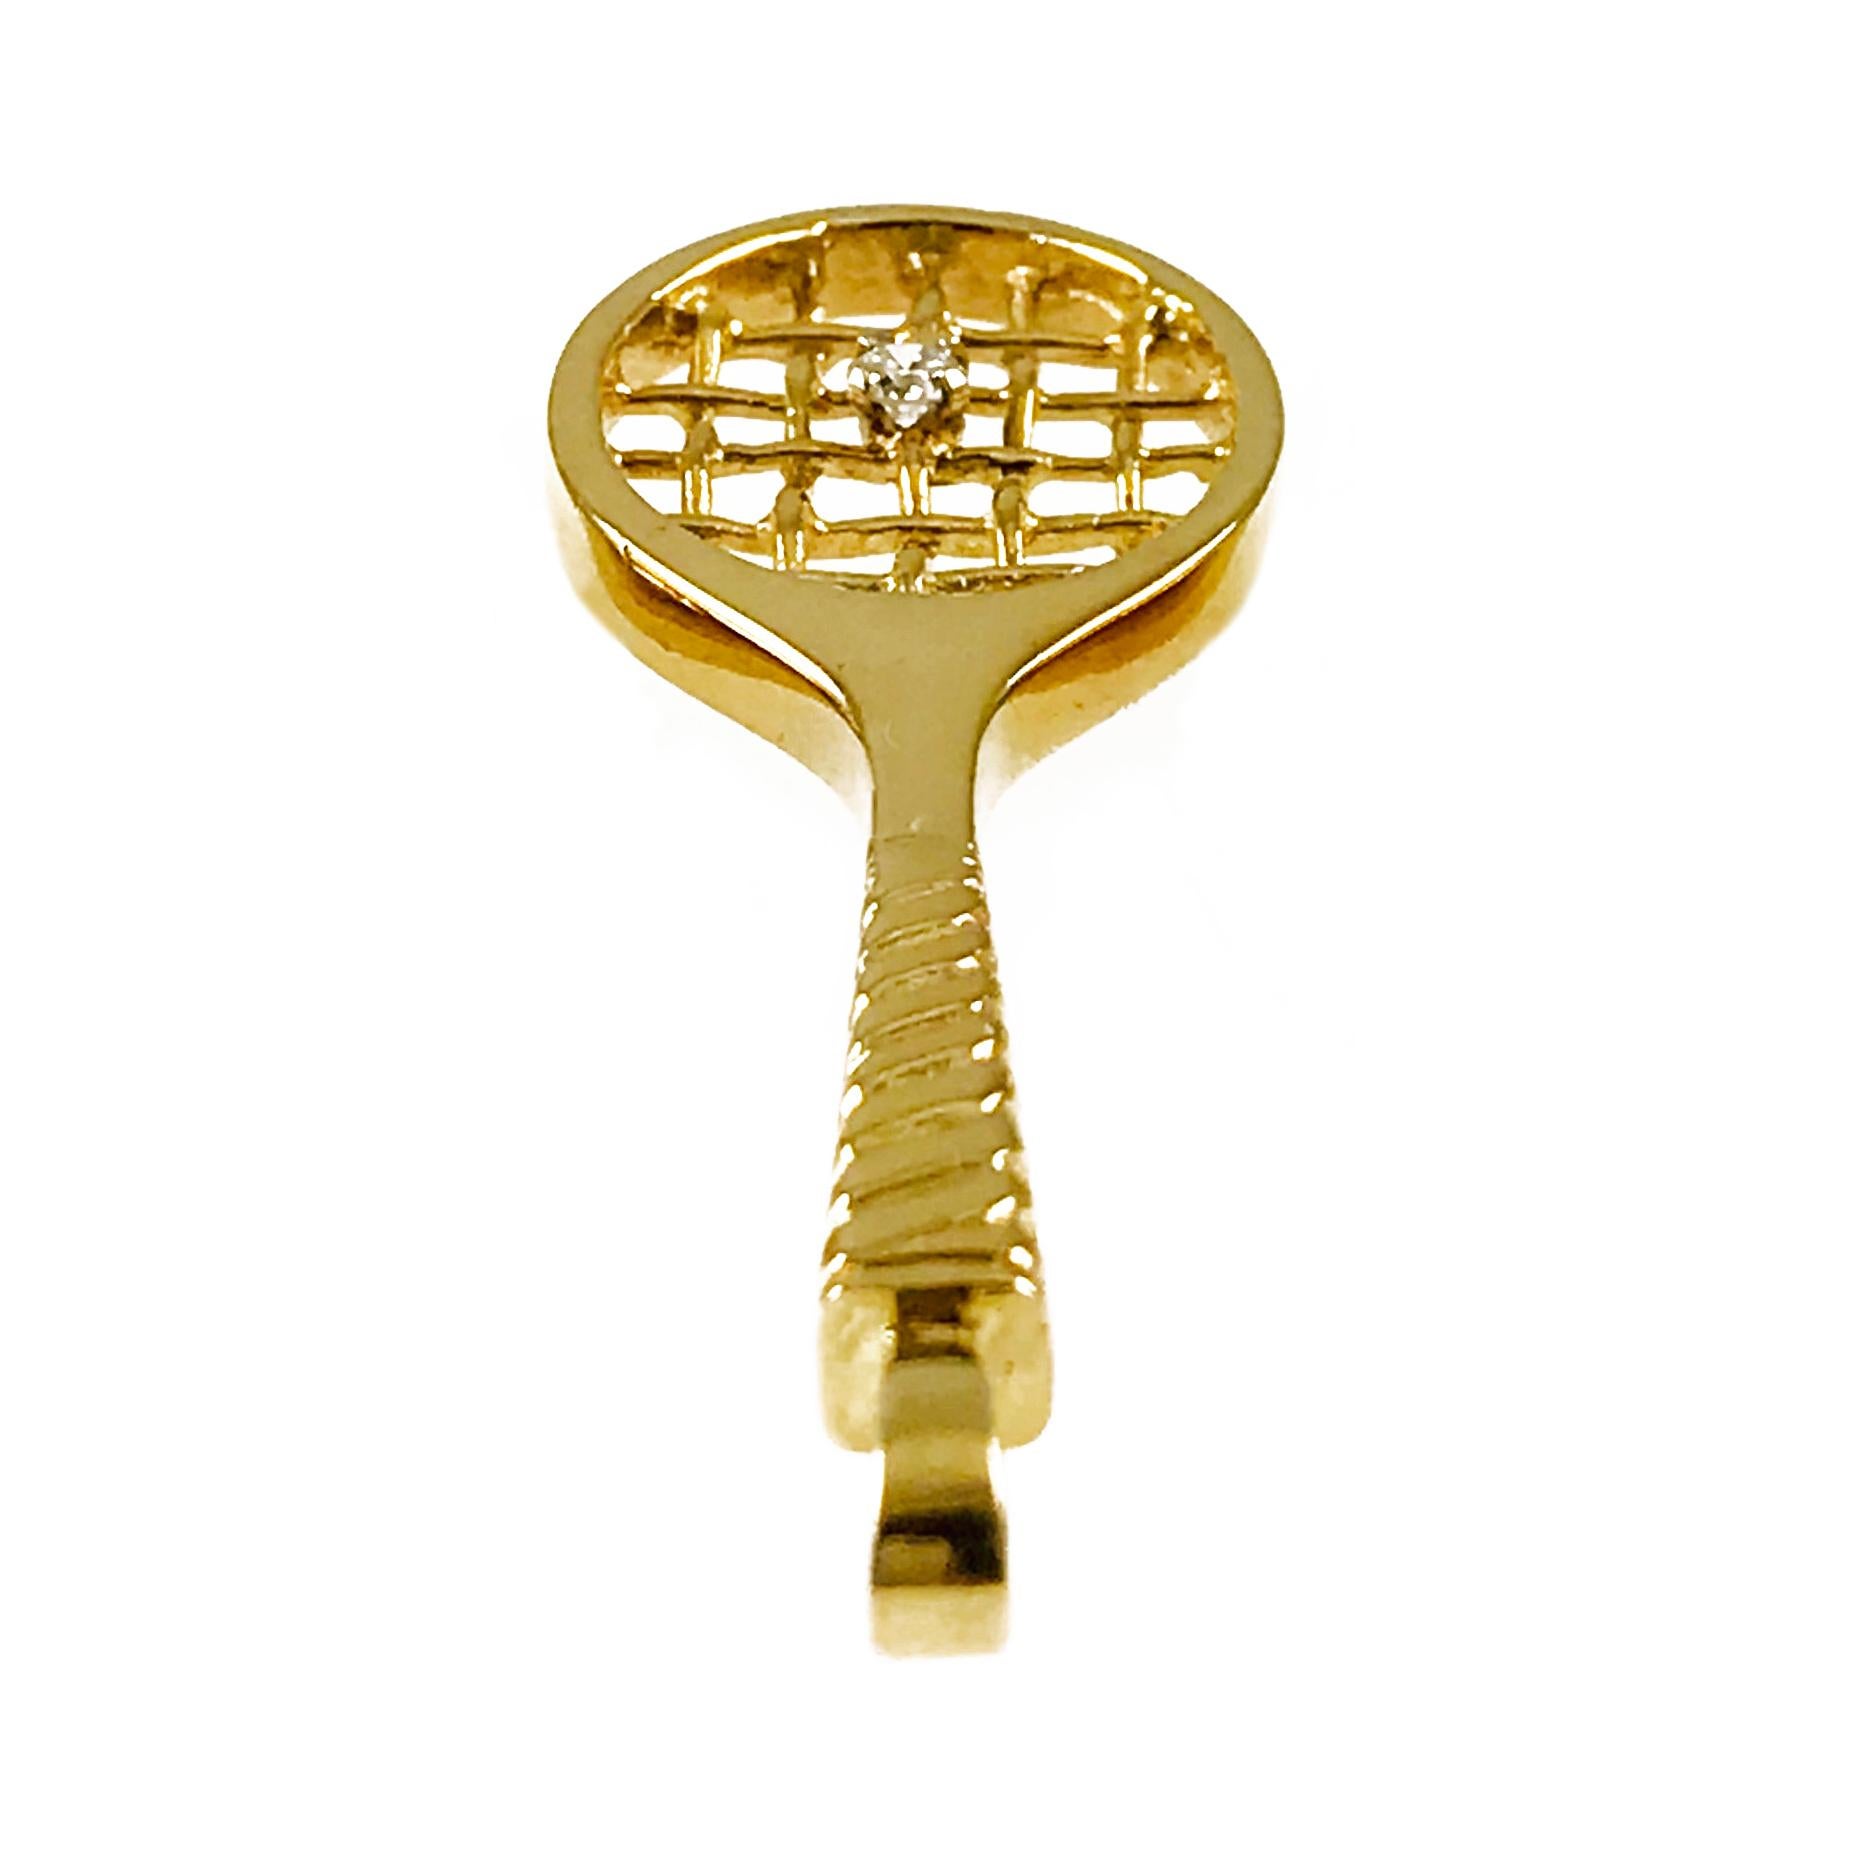 Pendentif raquette de tennis en or jaune 14 carats avec diamant Incogem. Si vous aimez le jeu, vous adorerez ce pendentif adorable. Le pendentif est méticuleusement fabriqué à la main en or jaune 14k, tant de détails dans la poignée et dans les